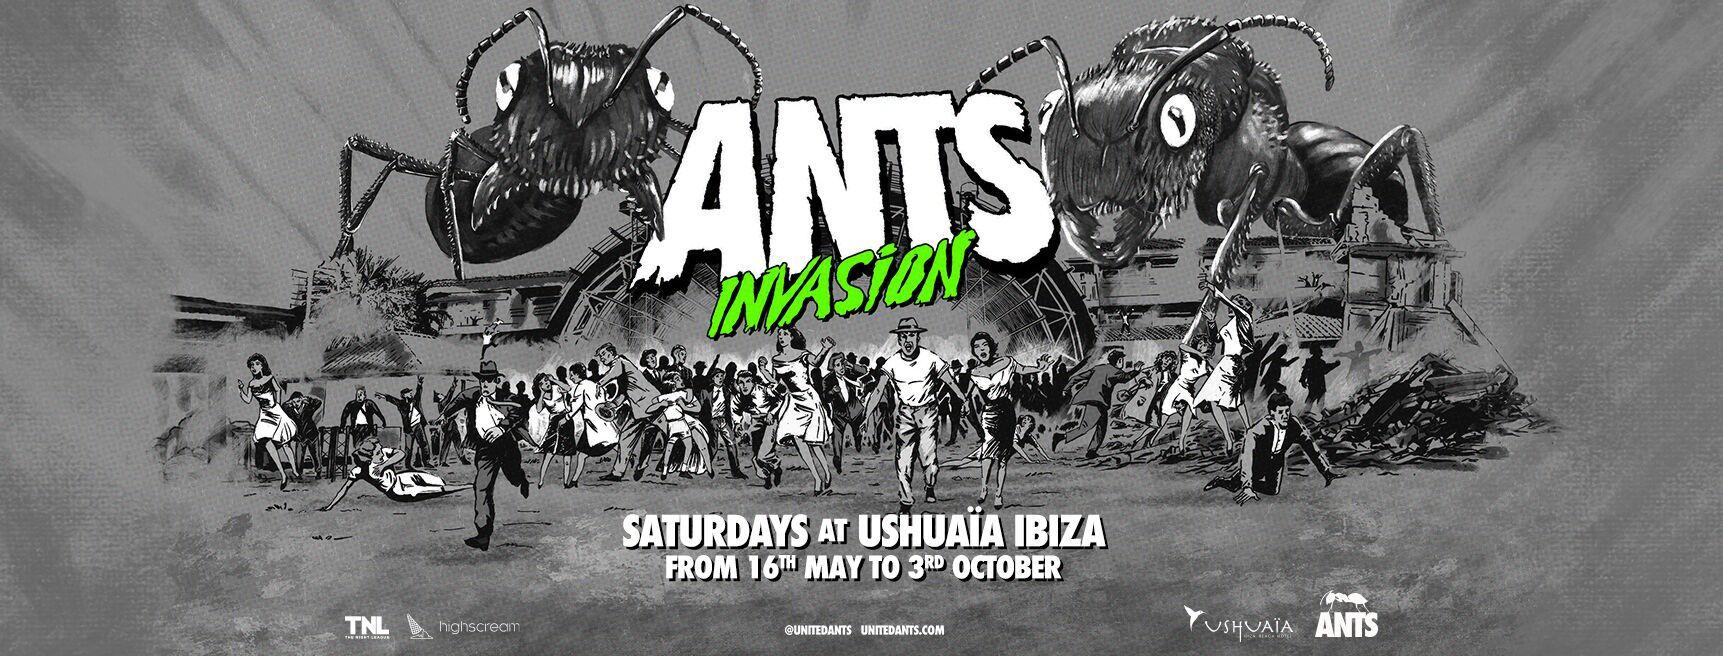 Ants Invasion 2020 - nueva temática, fechas y primeros confirmados de su residencia en Ushuaïa Ibiza